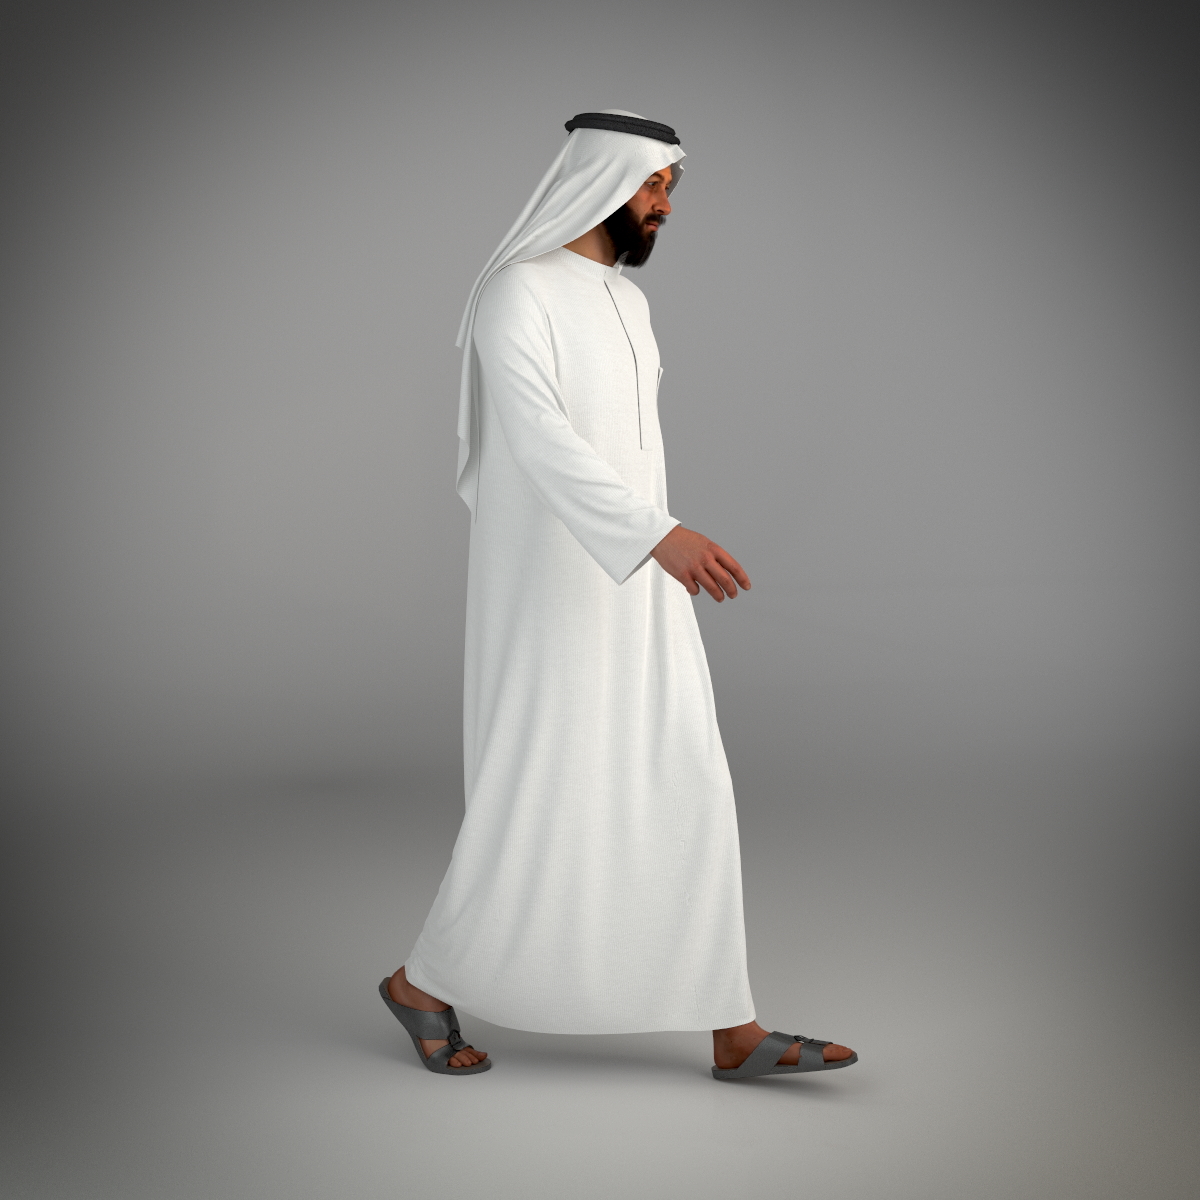 迪拜穿着传统服饰的阿联酋男子 库存照片. 图片 包括有 男人, 中间, 东部, 江边, 现代, 早晨, 一个 - 211855654